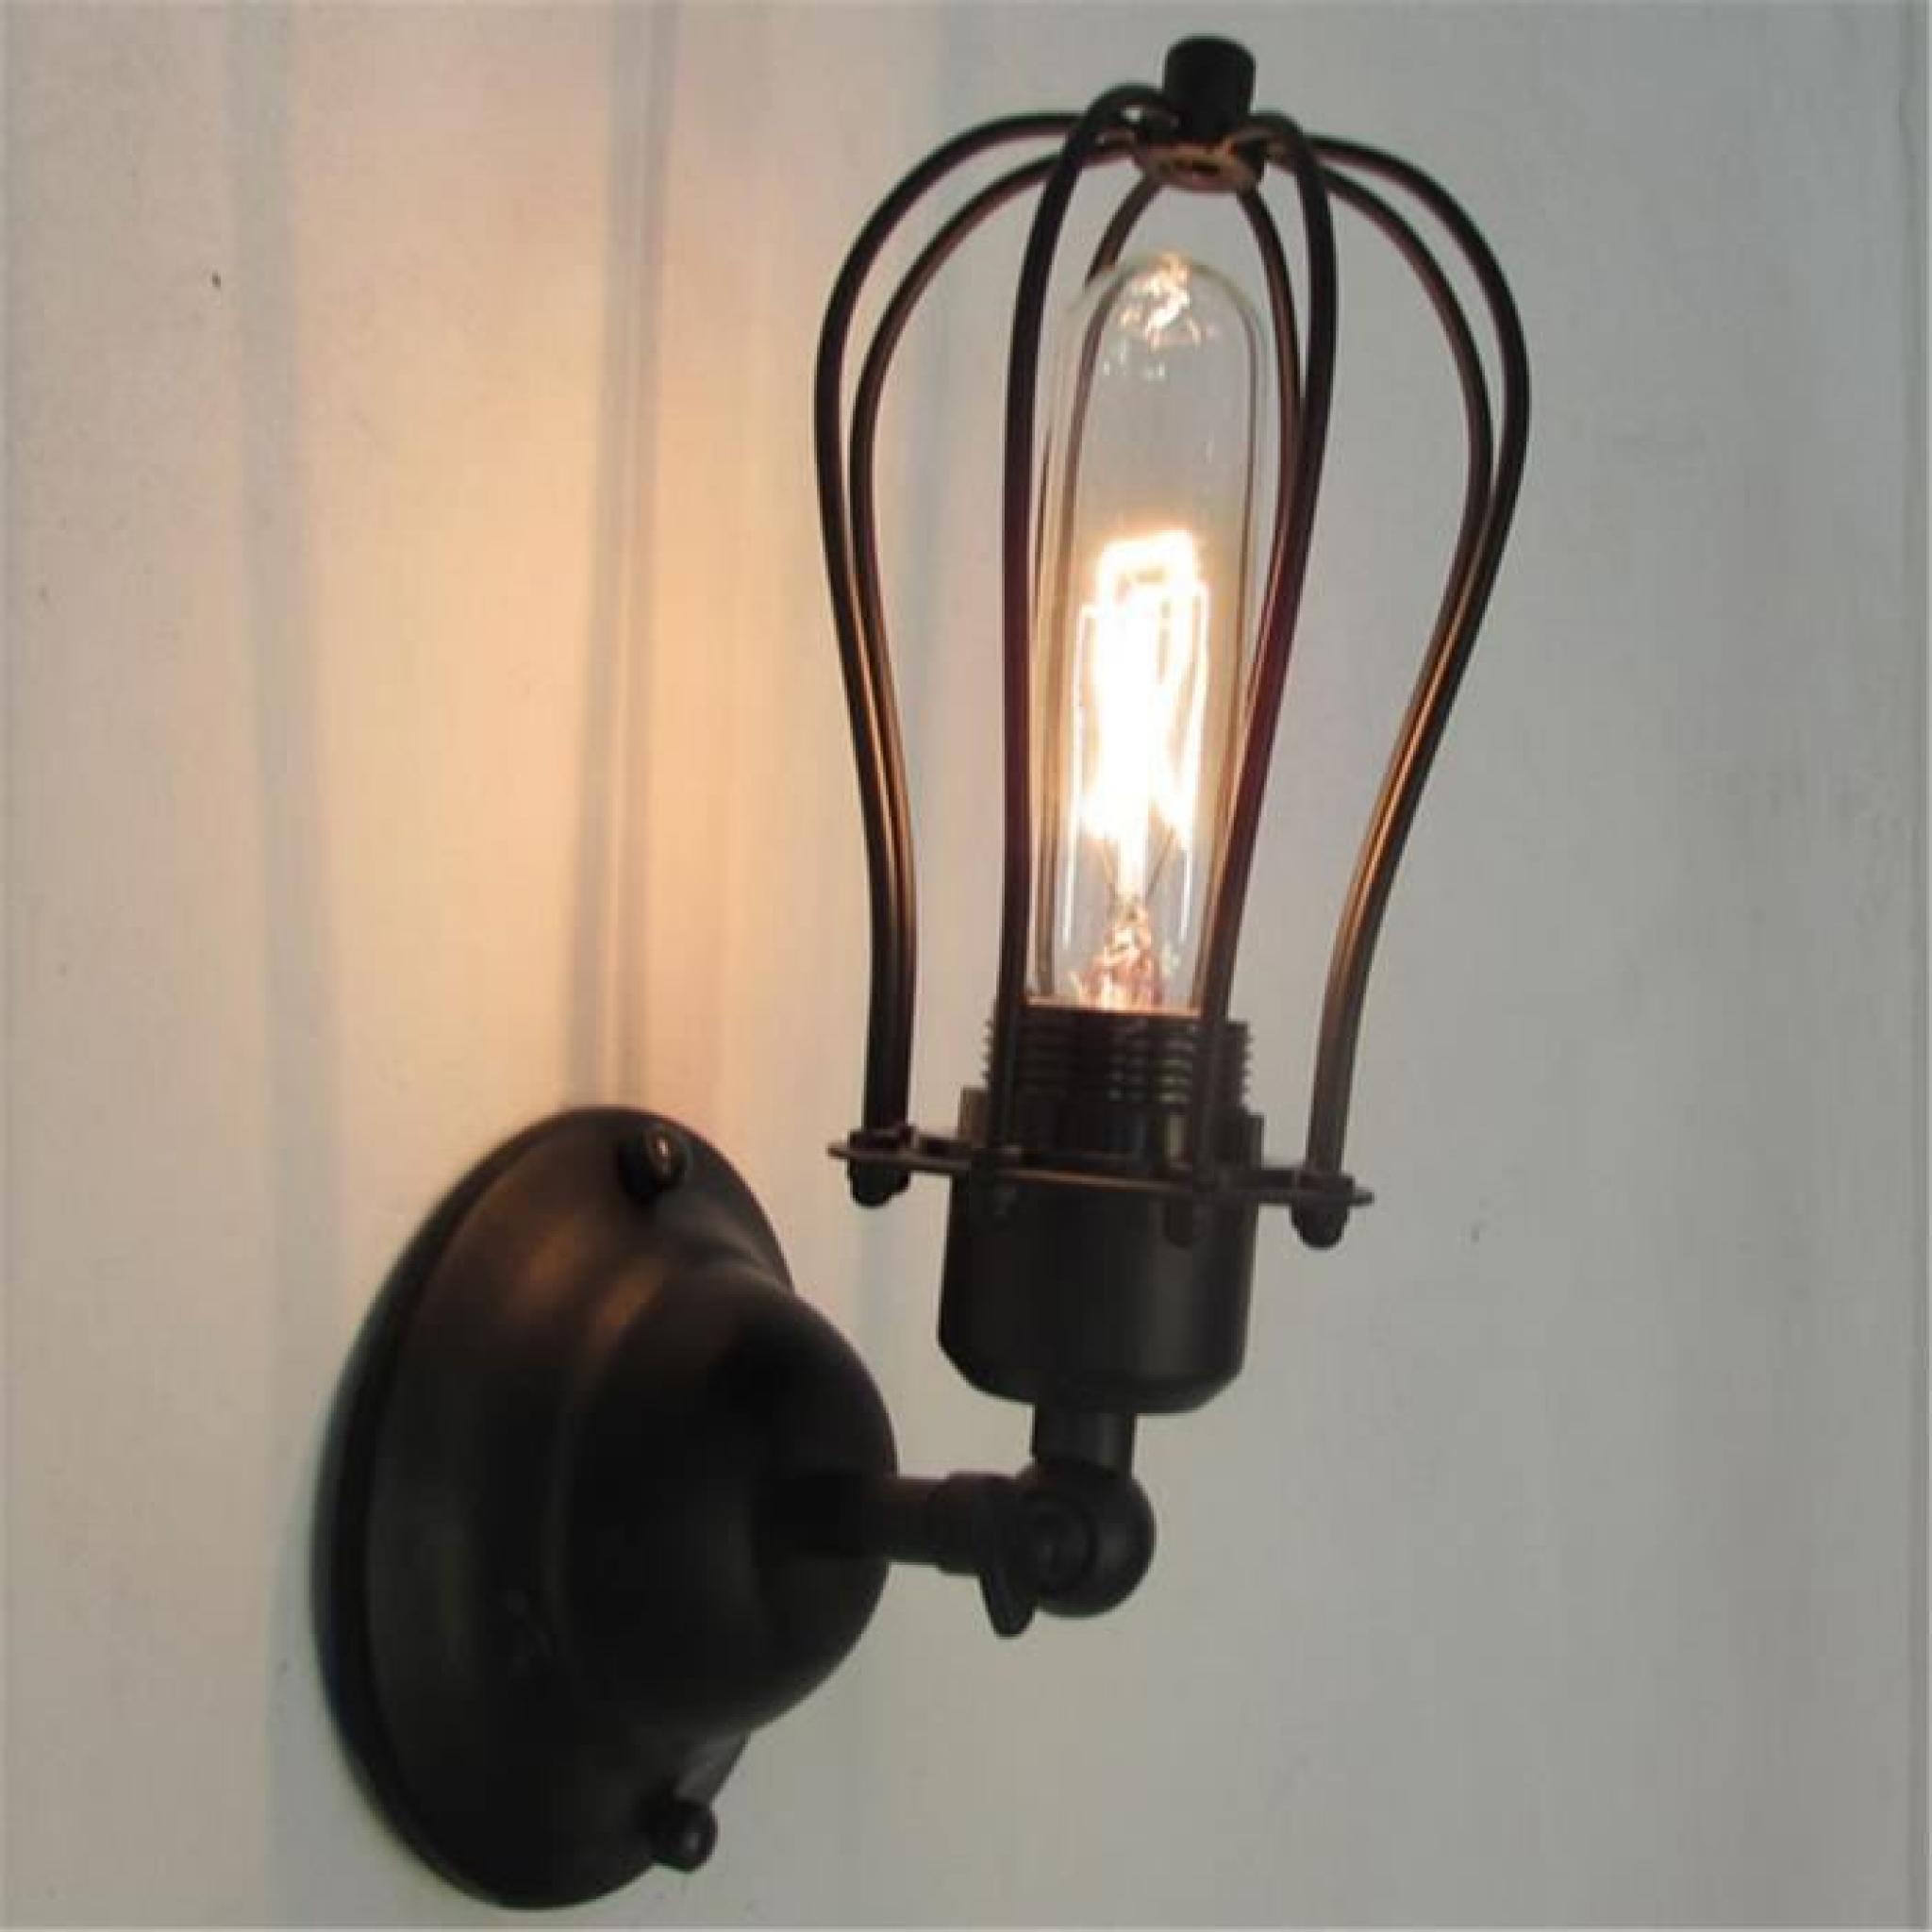 FerandHome Antique Applique Murale Feu Lampe de Mur Luminaire Edison Style Industriel Verre Clair Forme Cloche Couloir pas cher